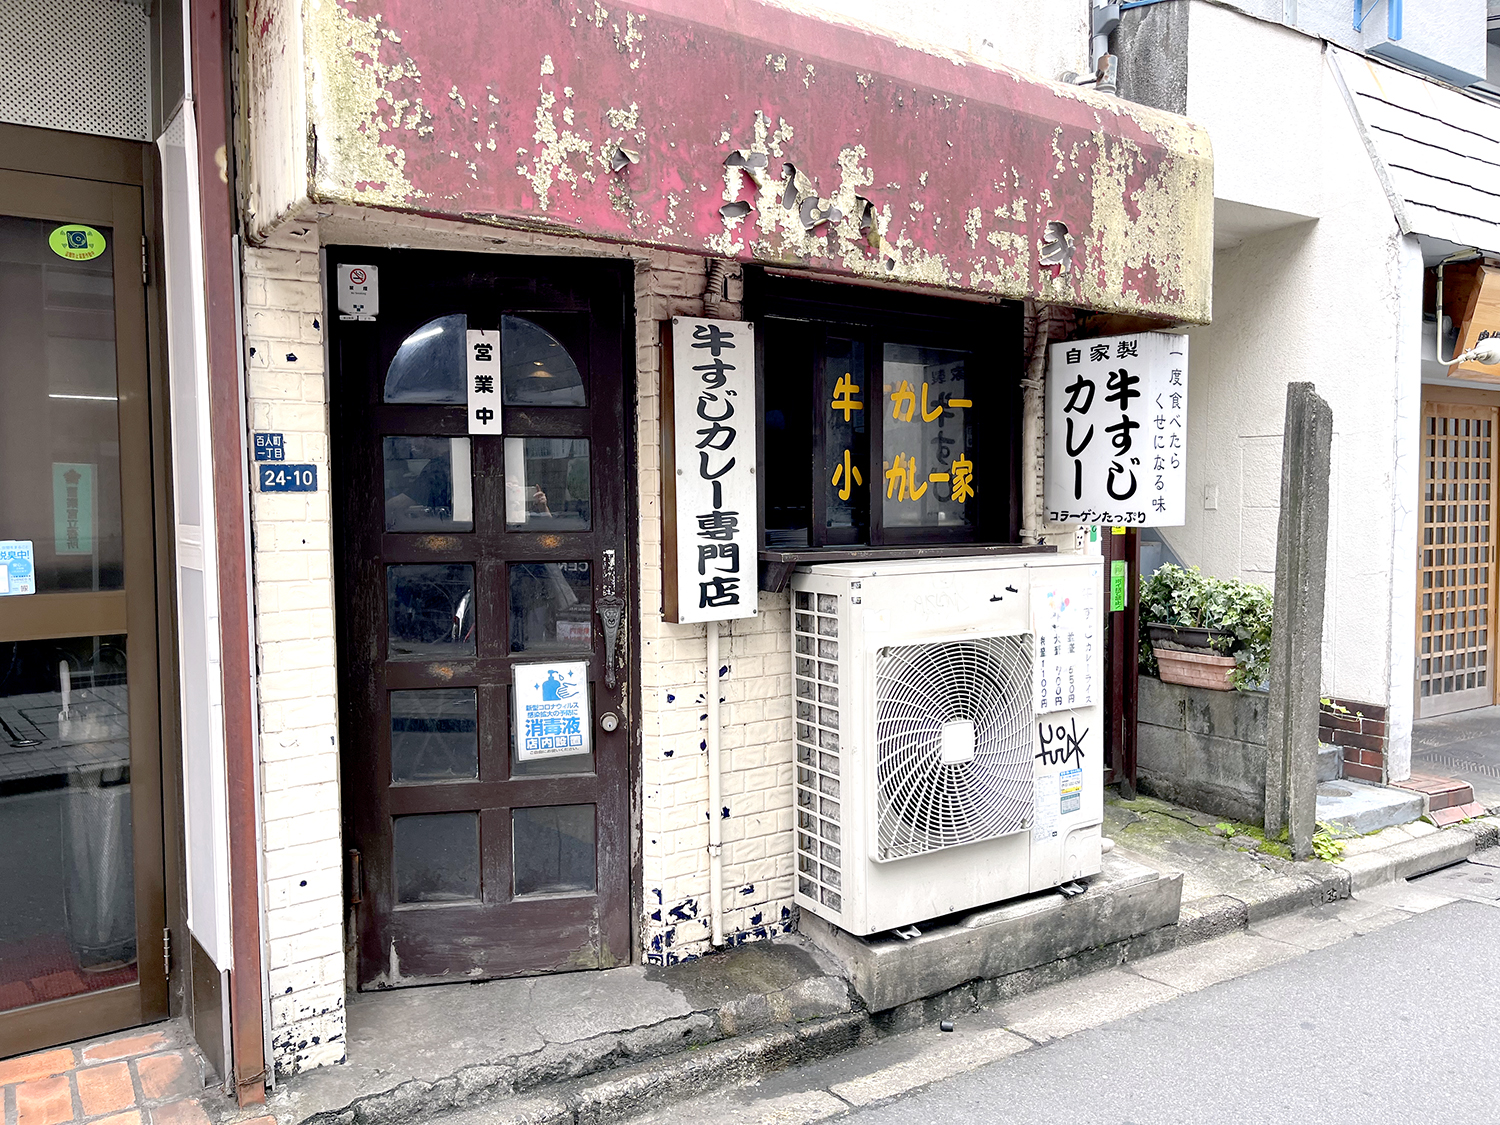 昭和の喫茶店風のドアを開けるとカレーのスパイシーな香りが漂ってくる。